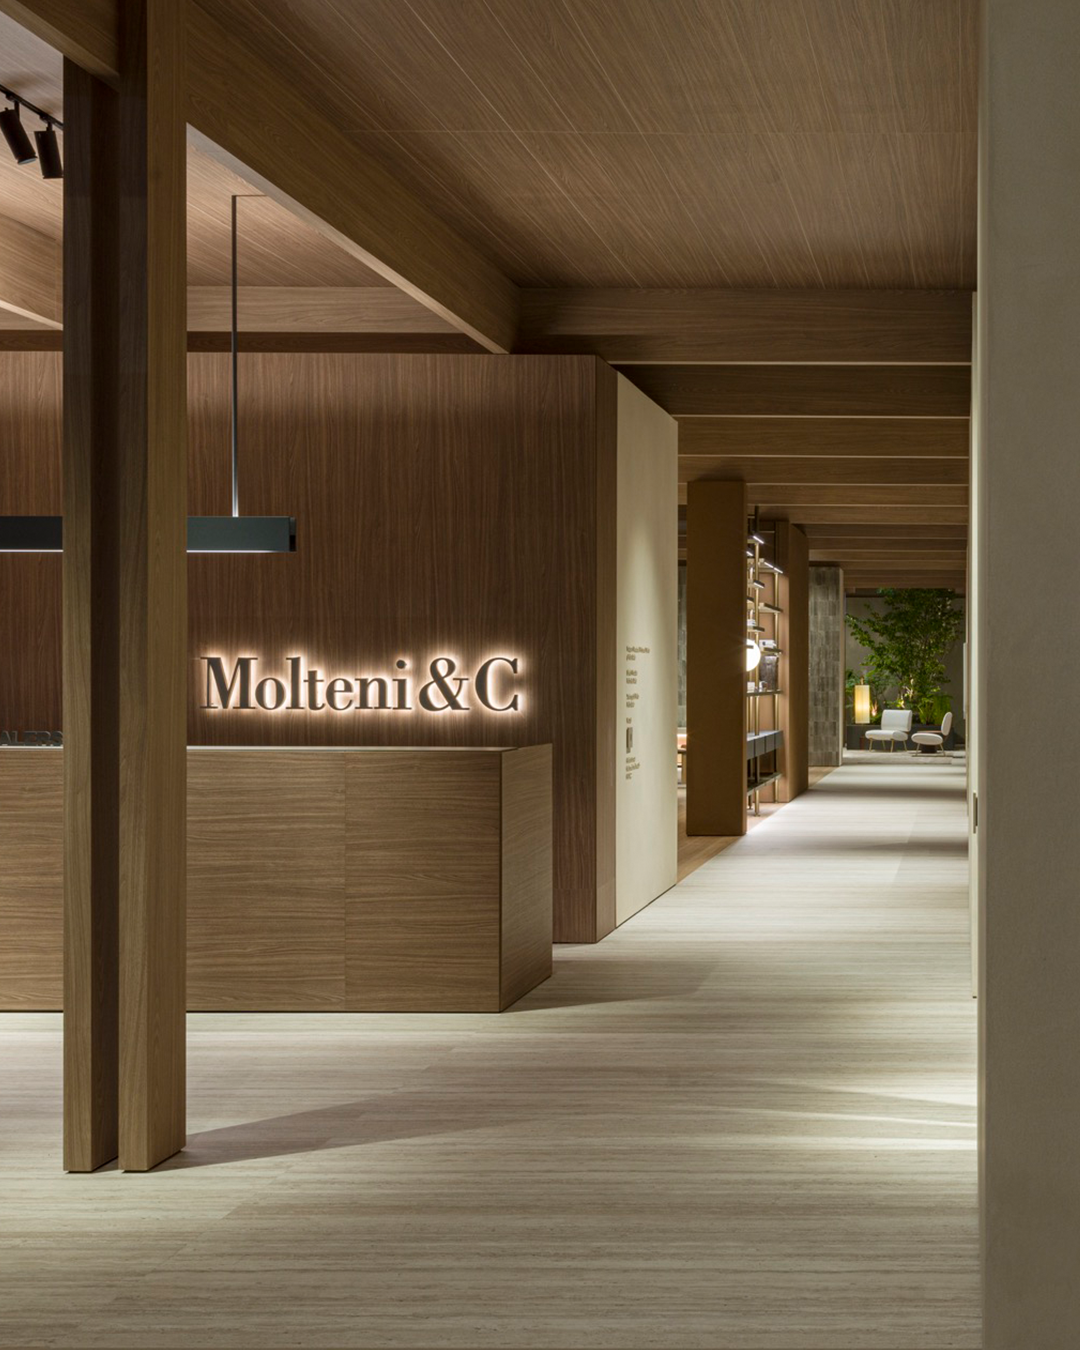 Molteni&C, Premium Italian Design